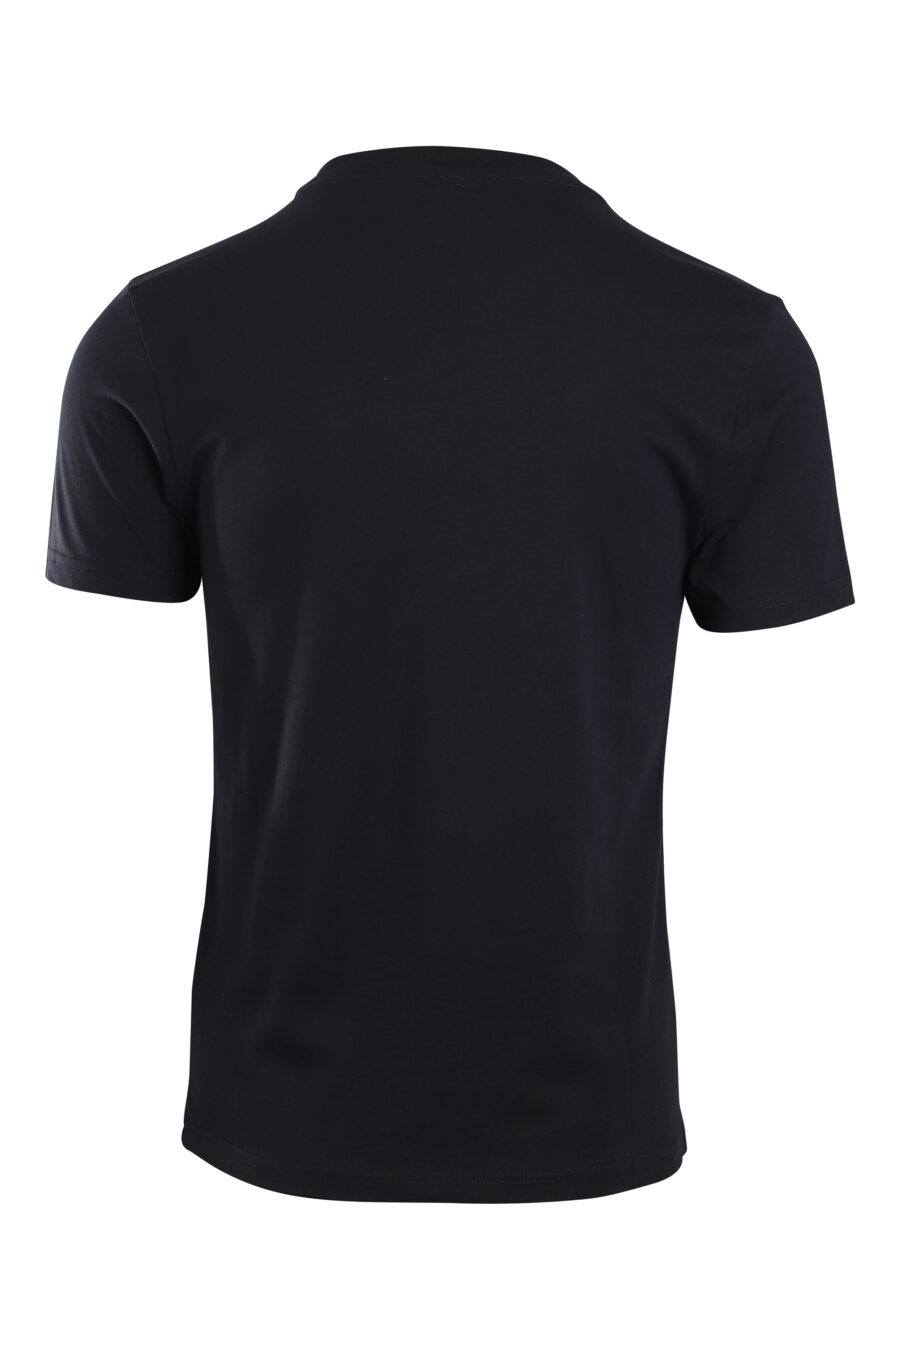 Schwarzes T-Shirt mit Logo-Schulterband - IMG 2161